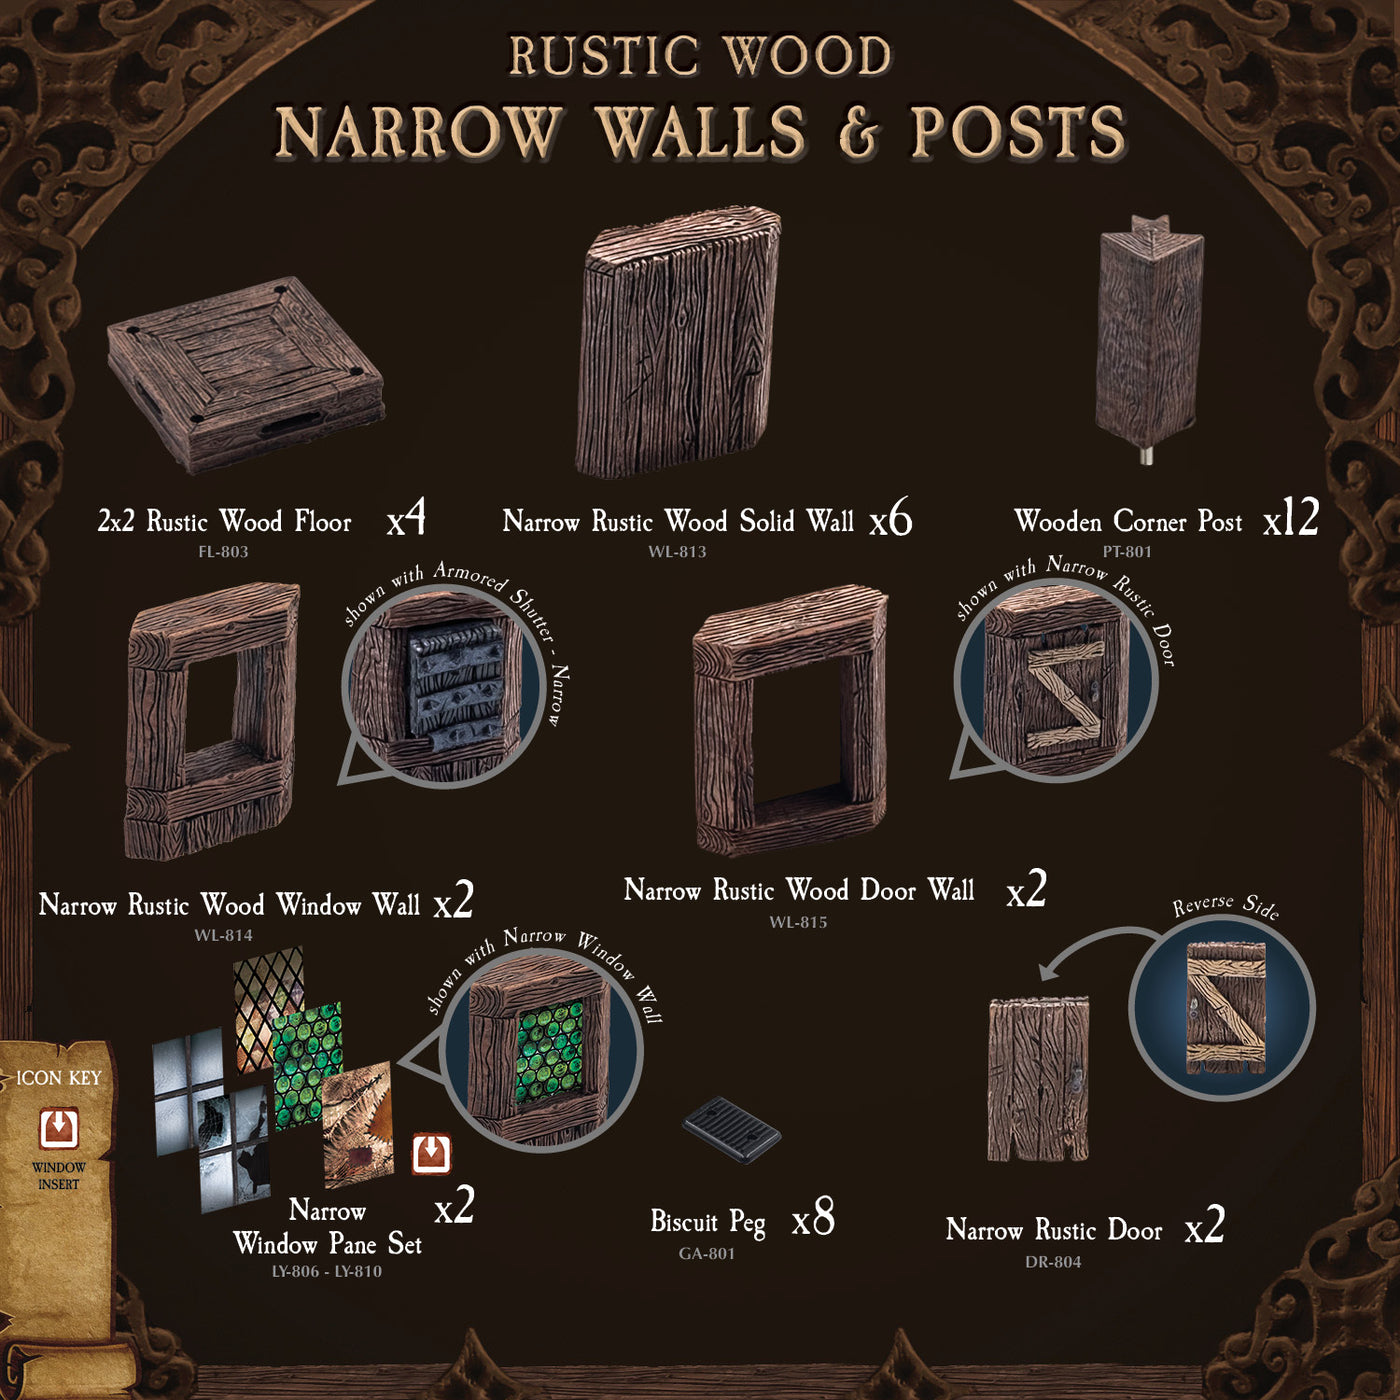 Rustic Wood - Narrow Walls & Posts (Painted)